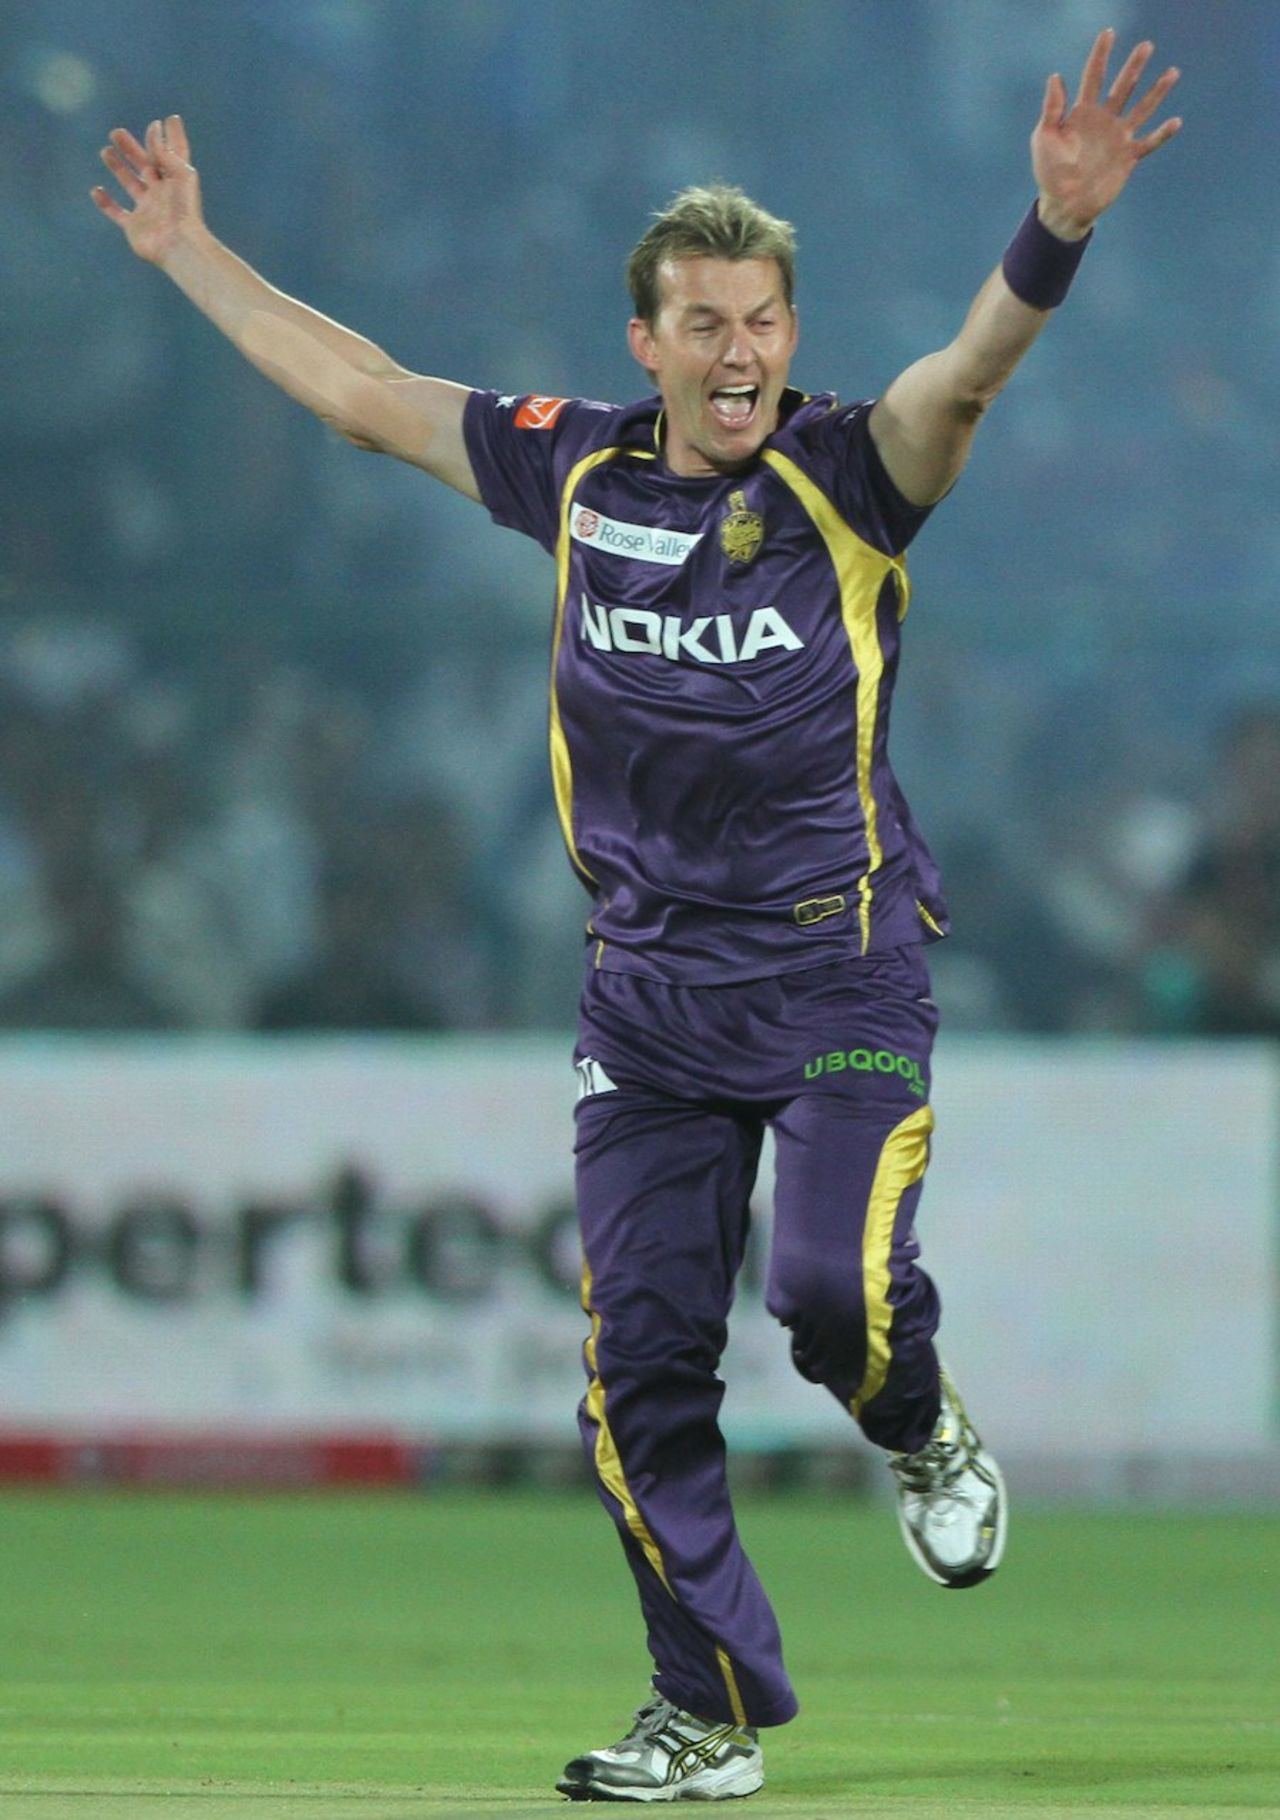 Brett Lee celebrates Shane Watson's wicket, Rajasthan v Kolkata, IPL 2013, Jaipur, April 8, 2013